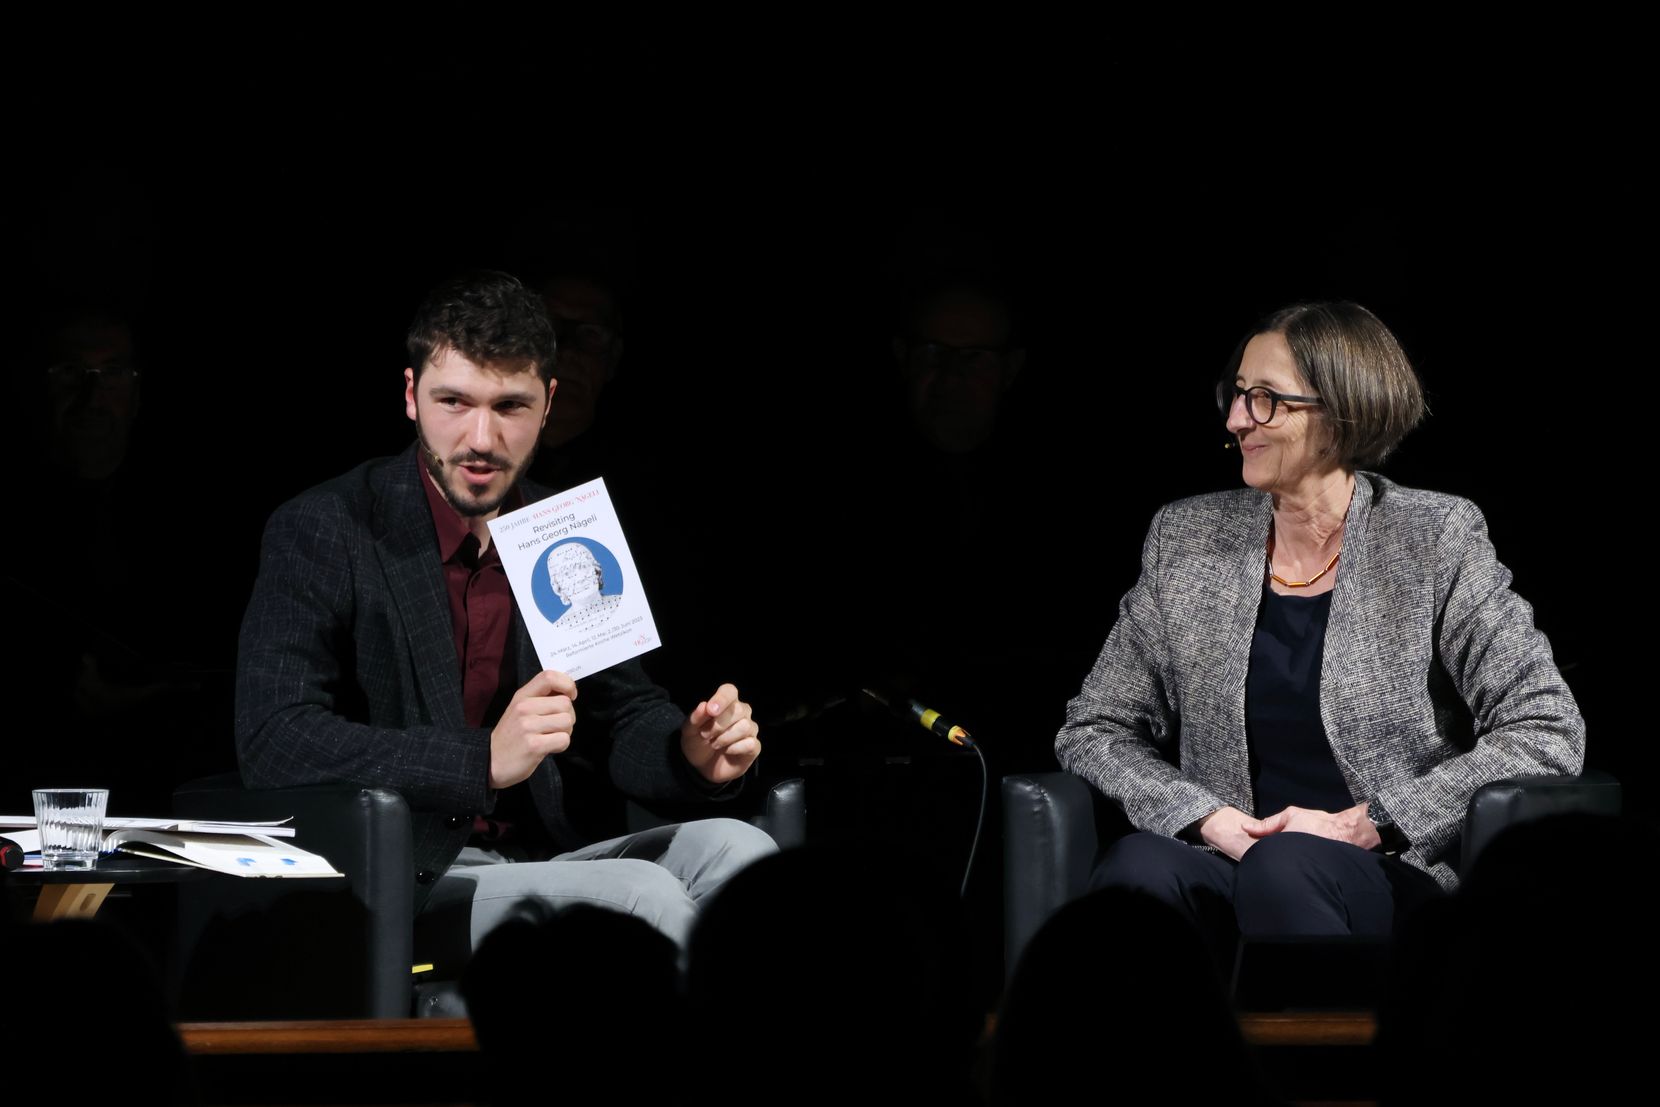 Historiker Andrea Schmid mit Buch in der Hand und Claudia Fischer-Karrer, beide sitzend auf einem Stuhl.